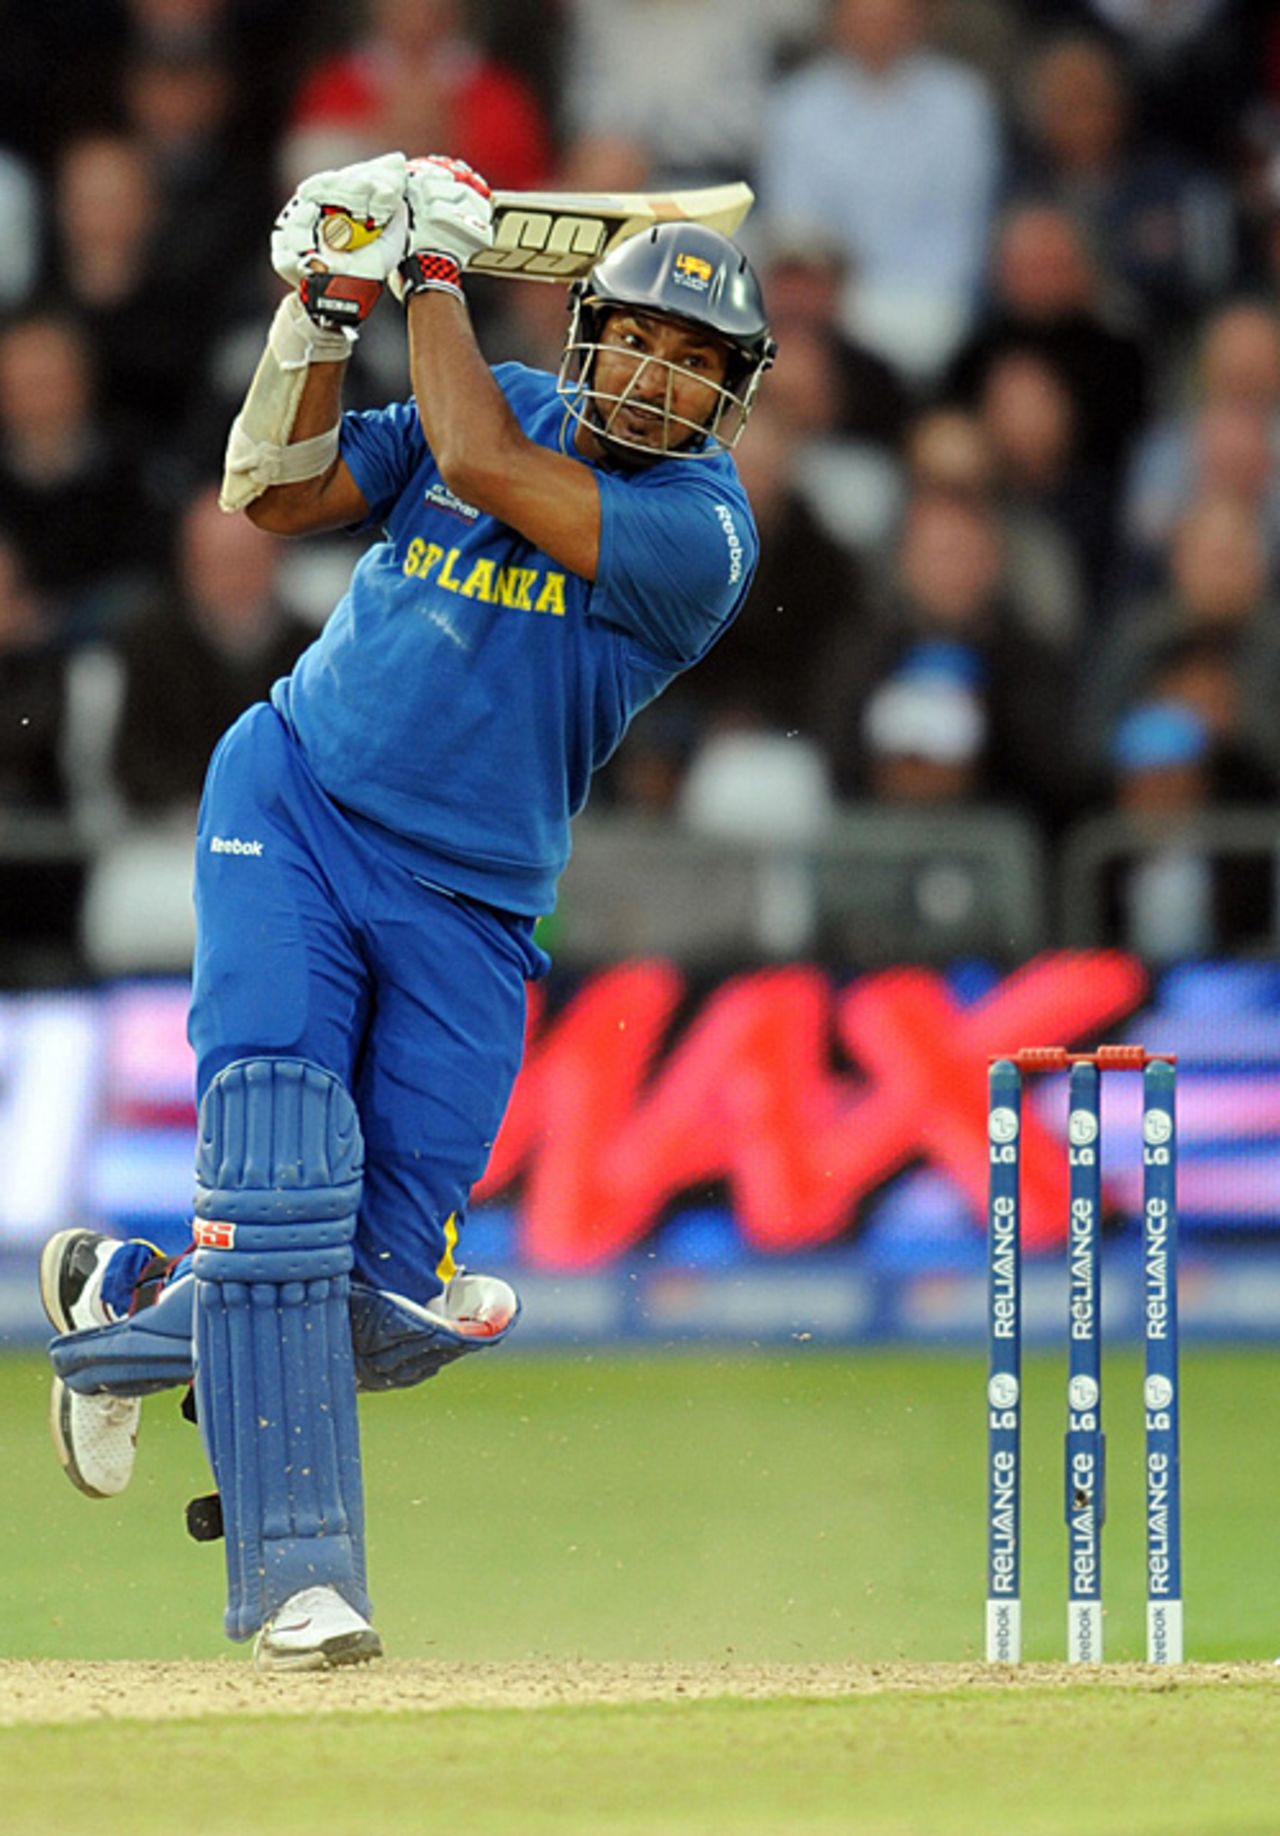 Kumar Sangakkara drives inside out over cover, Australia v Sri Lanka, ICC World Twenty20, Trent Bridge, June 8, 2009